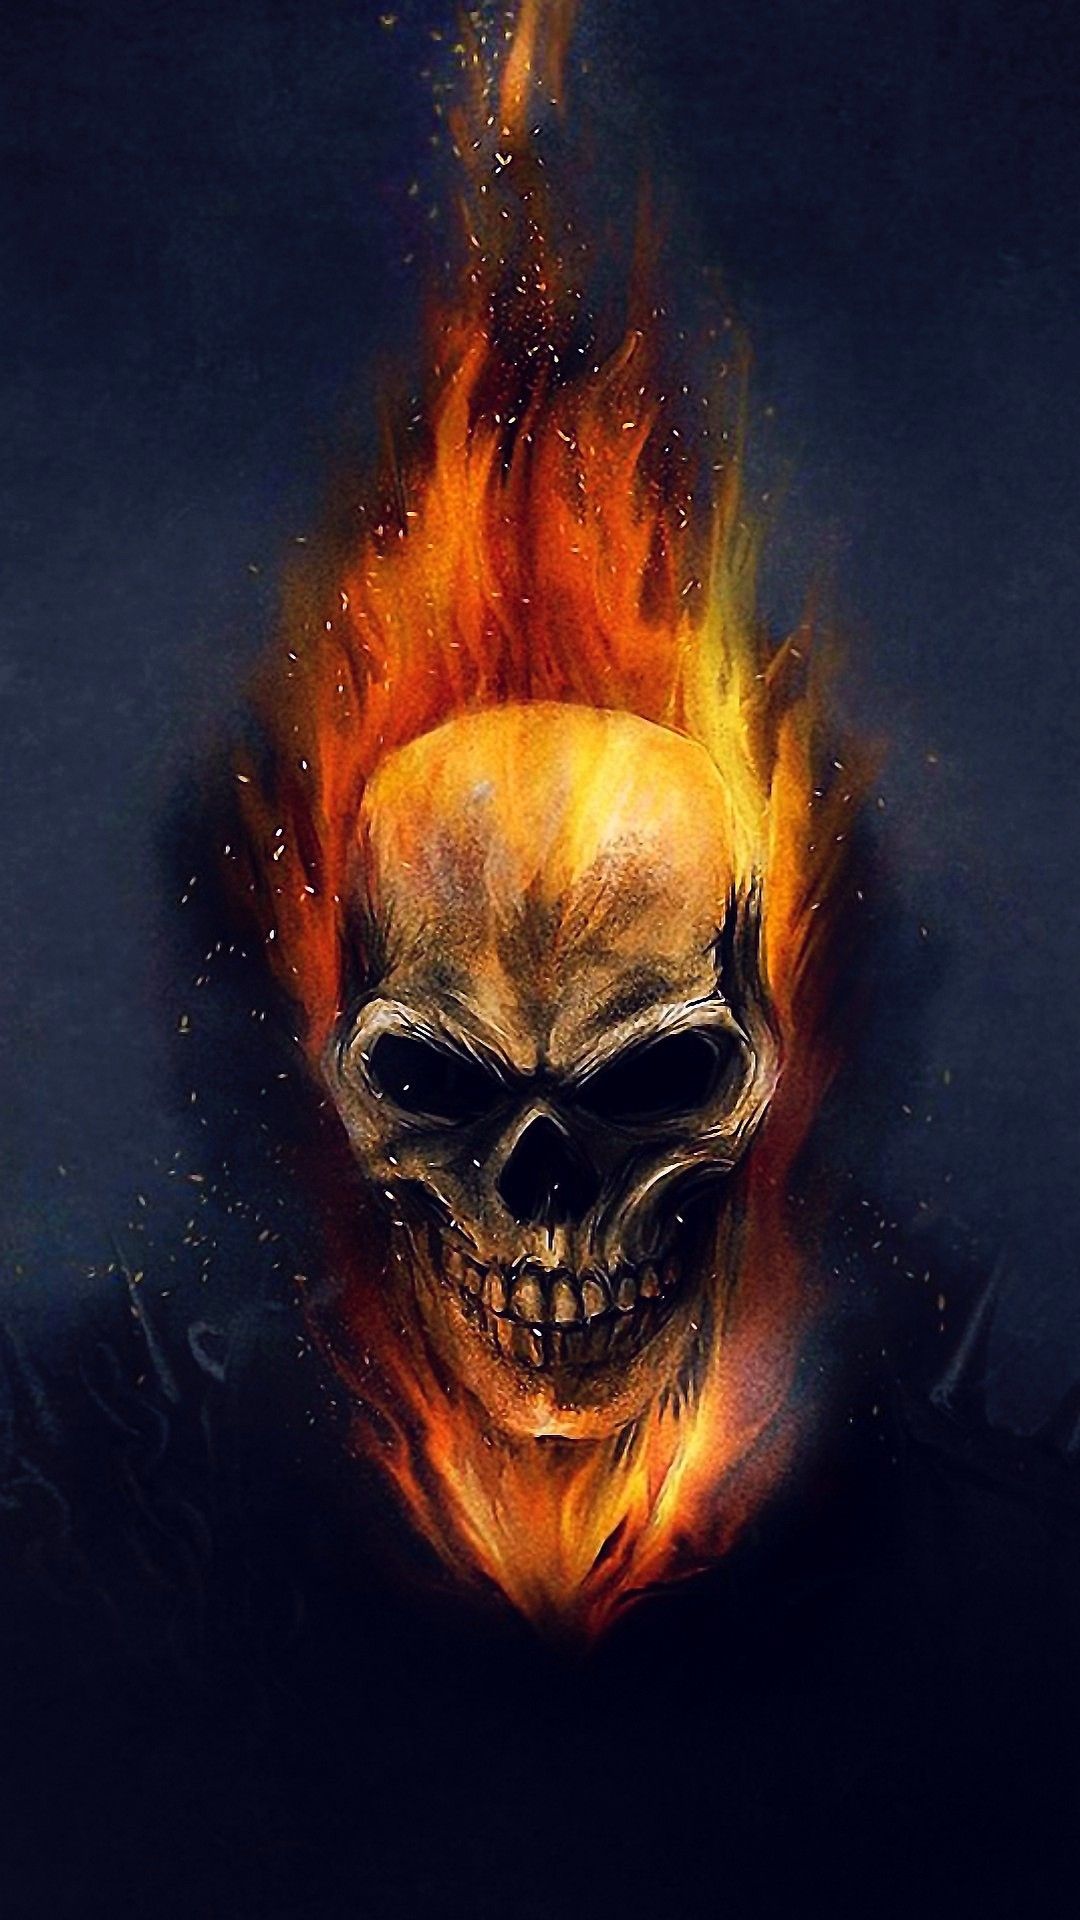 Ghost Rider Fire Skull - HD Wallpaper 